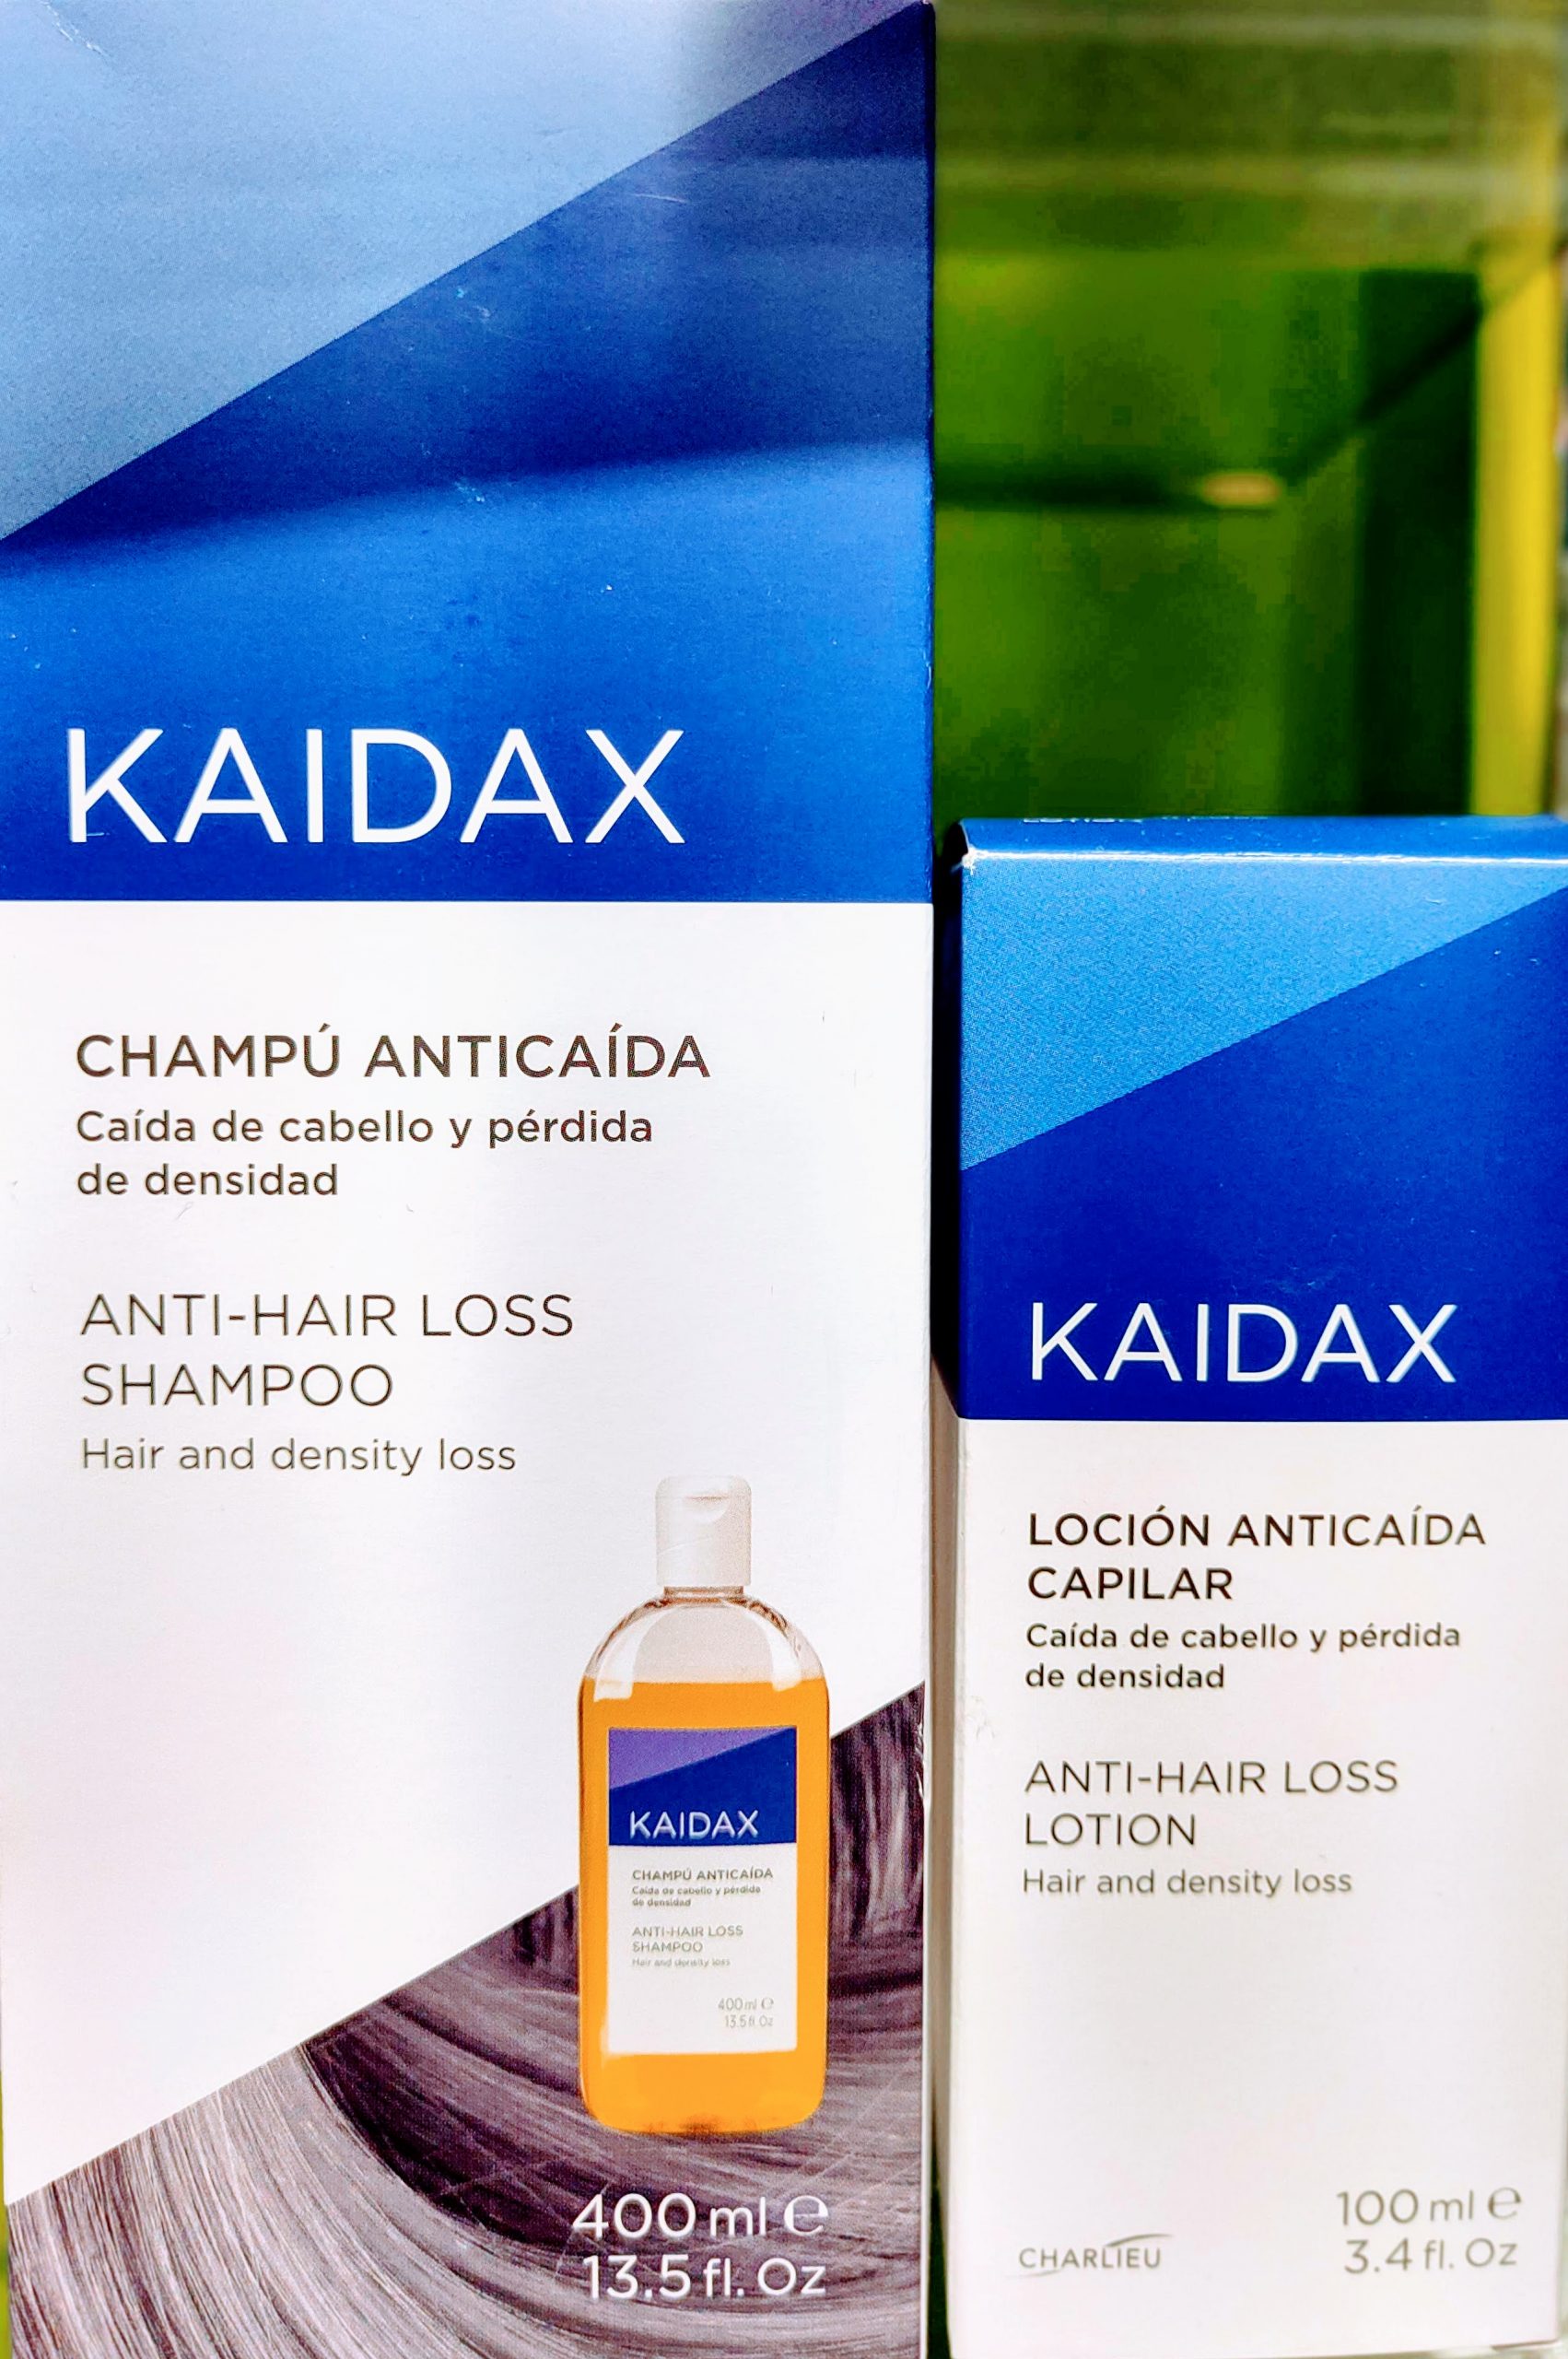 Kaidax Champú anti caída formulado con una base lavante suave favorece la microcirculación local mejorando la acción de los tratamientos anticaída